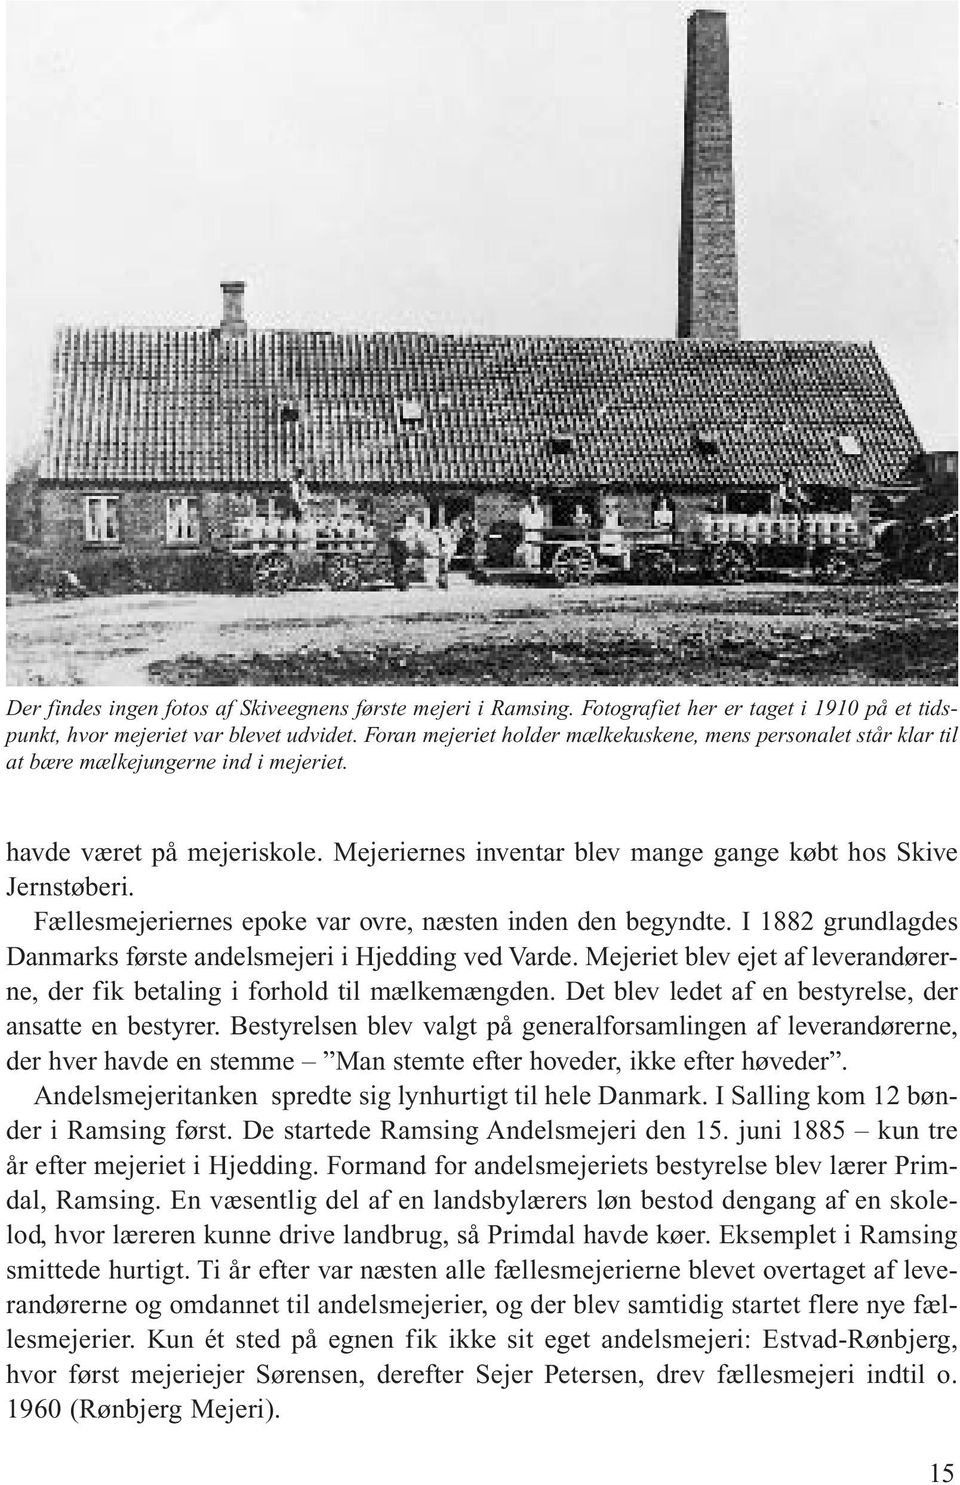 Fællesmejeriernes epoke var ovre, næsten inden den begyndte. I 1882 grundlagdes Danmarks første andelsmejeri i Hjedding ved Varde.